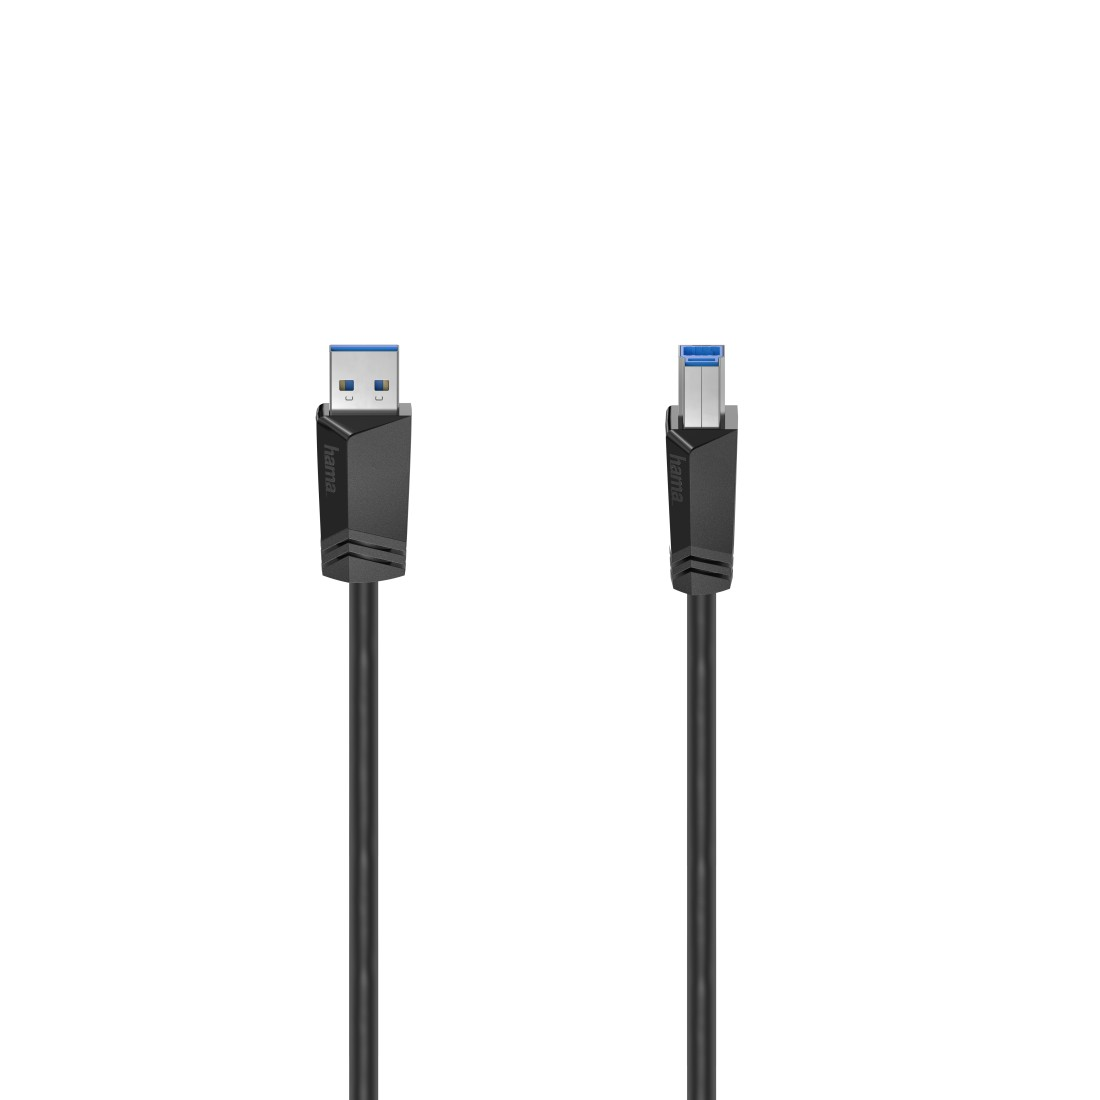 HAMA USB 3.0 Kabel, 1,5 m